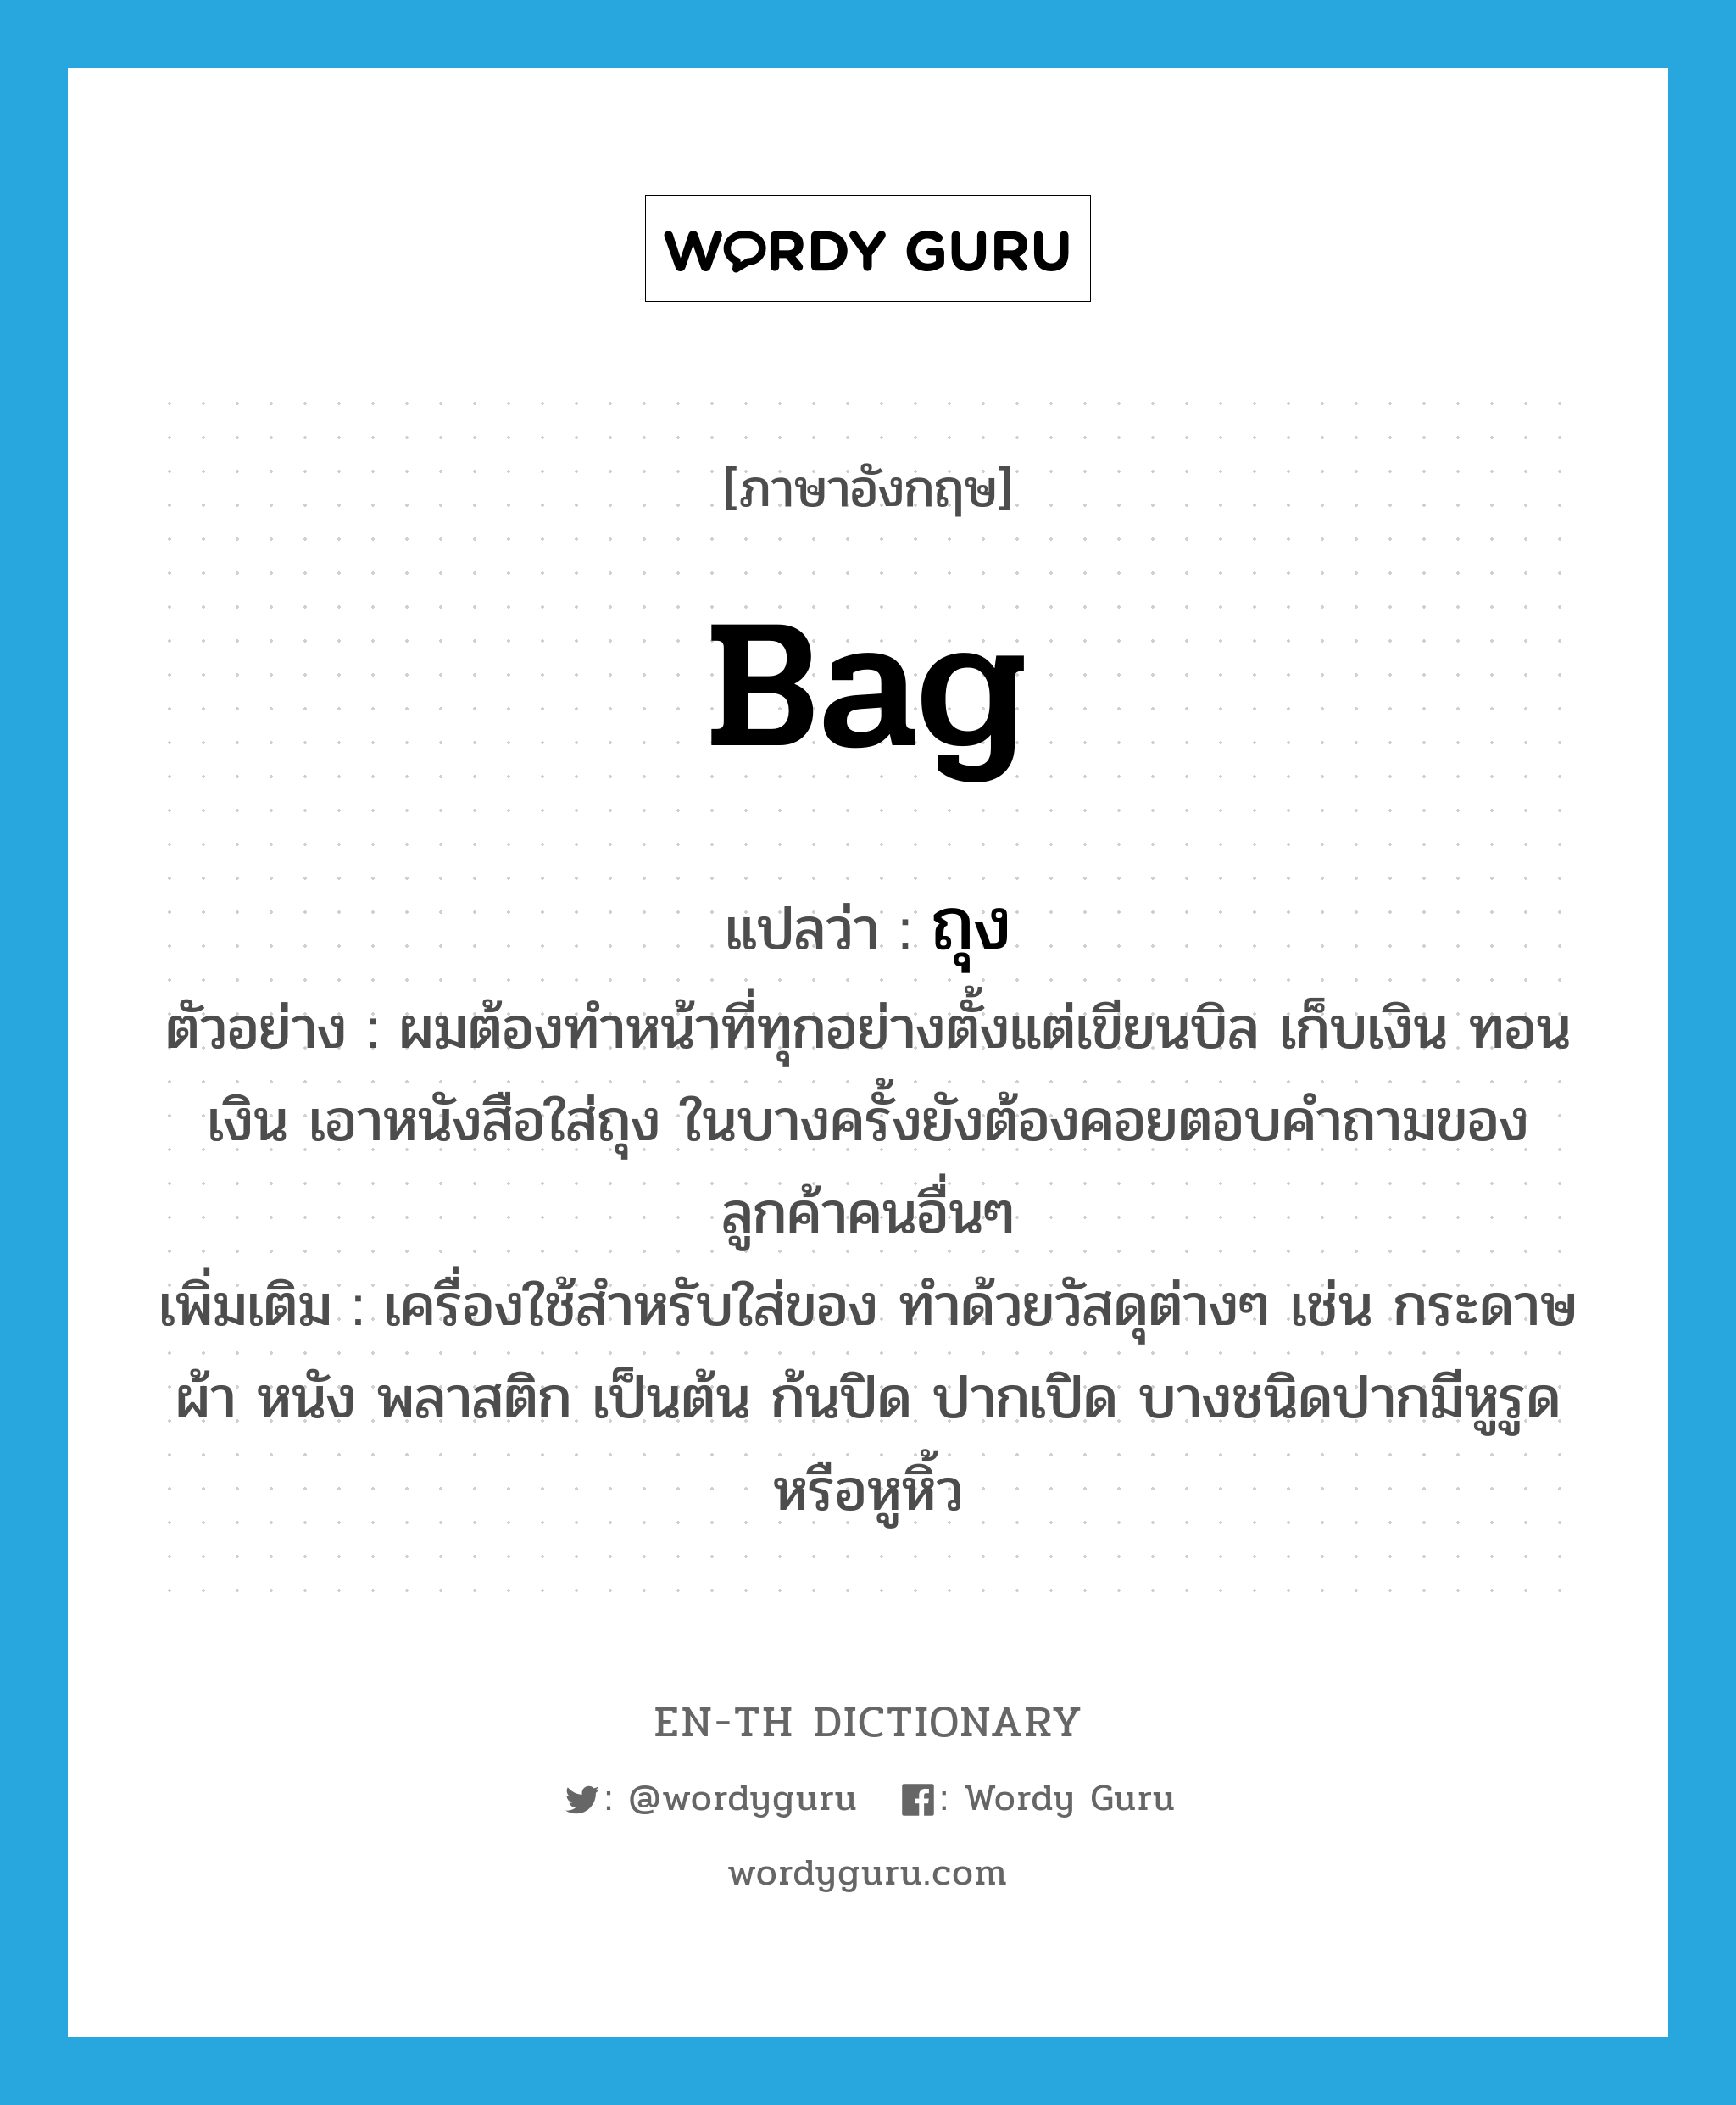 Bag แปลว่า? | Wordy Guru